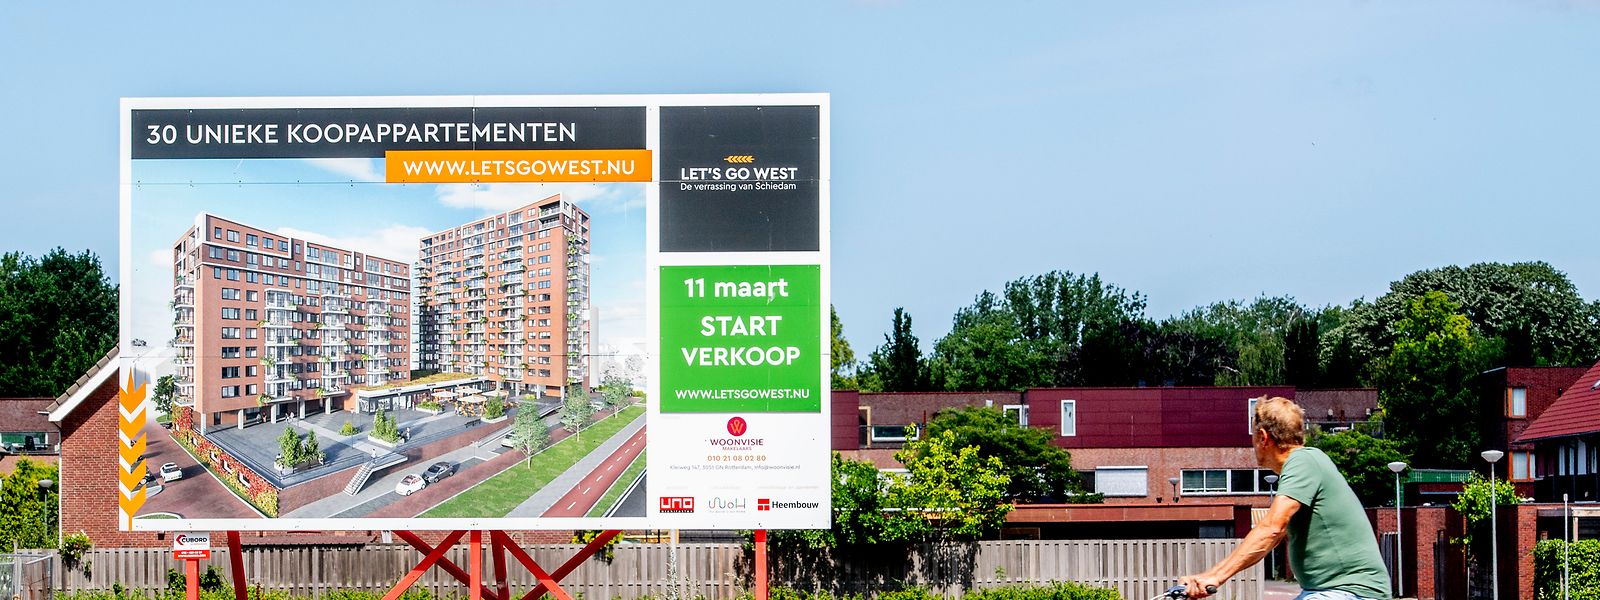 Die Preise auf dem niederländischen Wohnungsmarkt sind in letzter Zeit explodiert. 